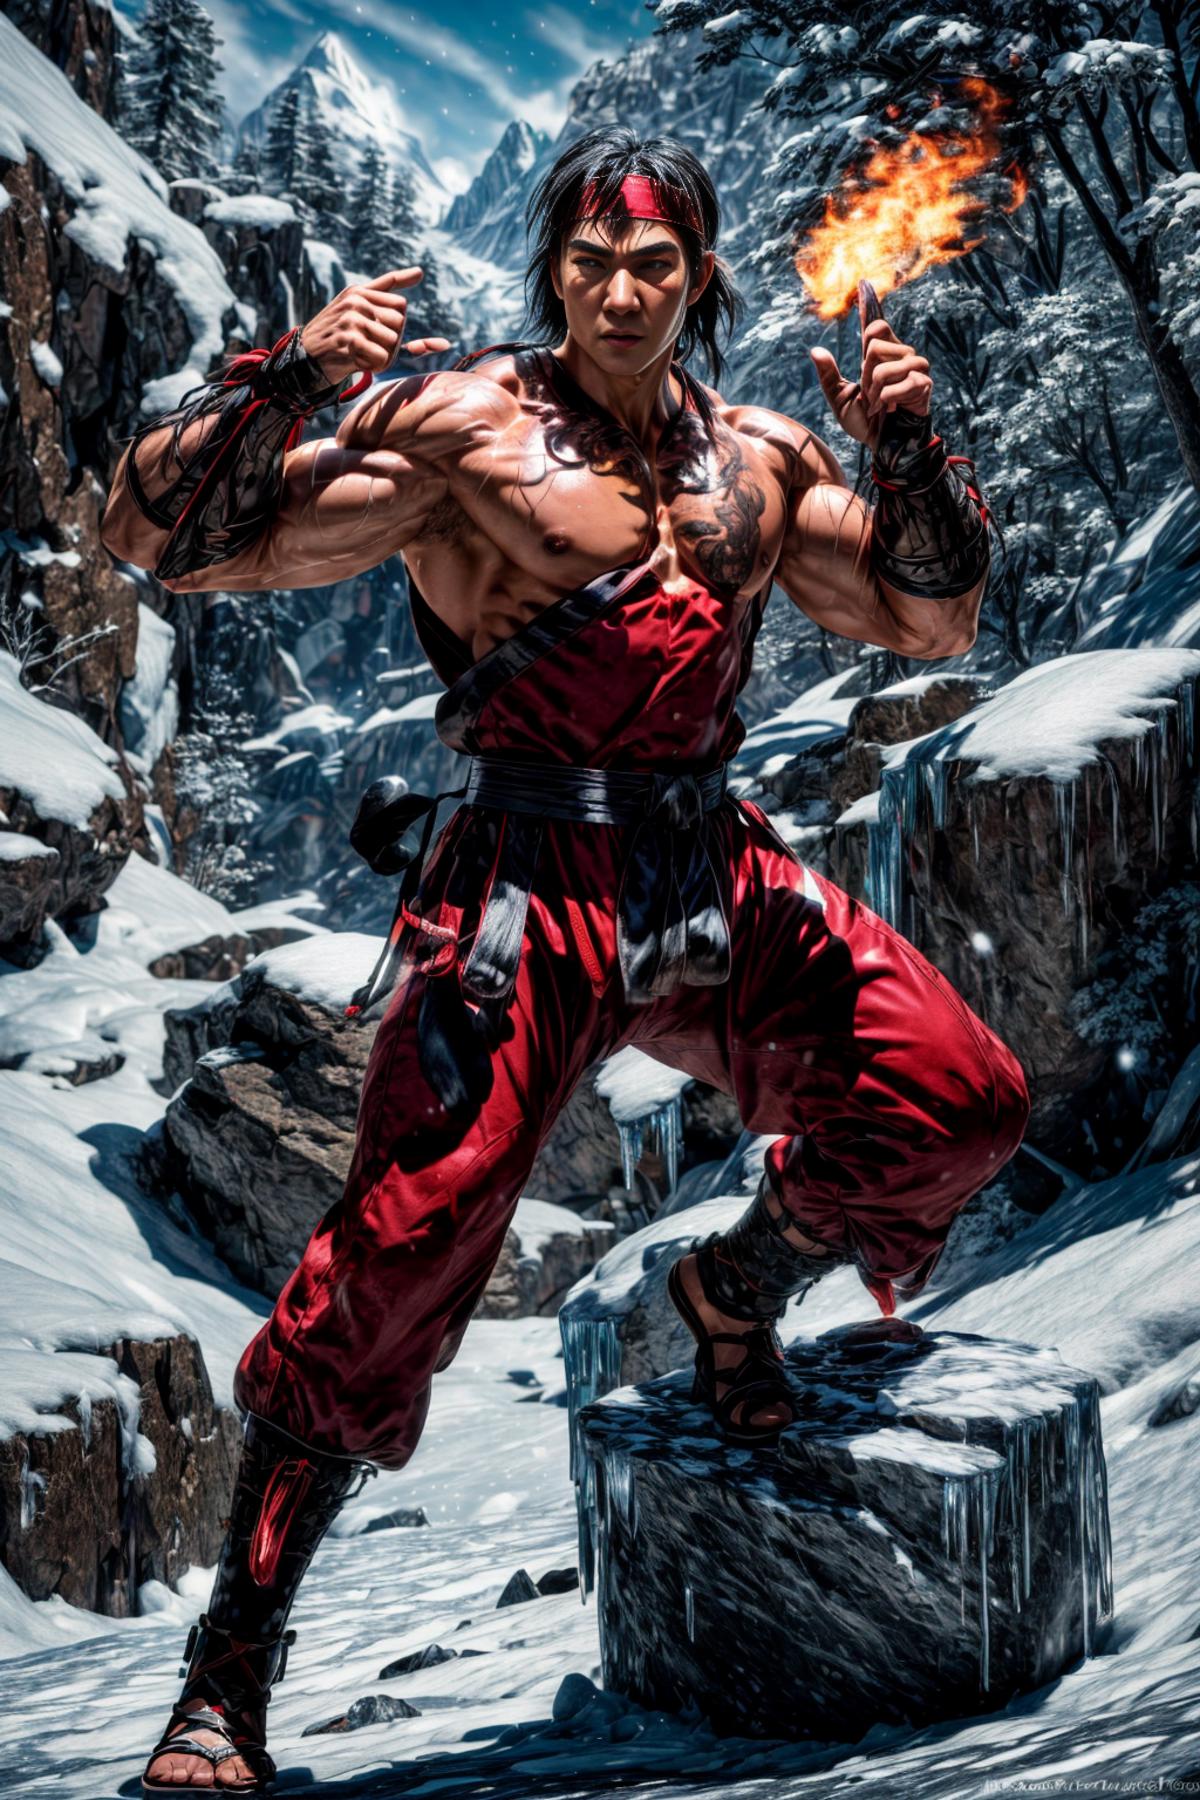 Liu Kang (Mortal Kombat) image by DeViLDoNia